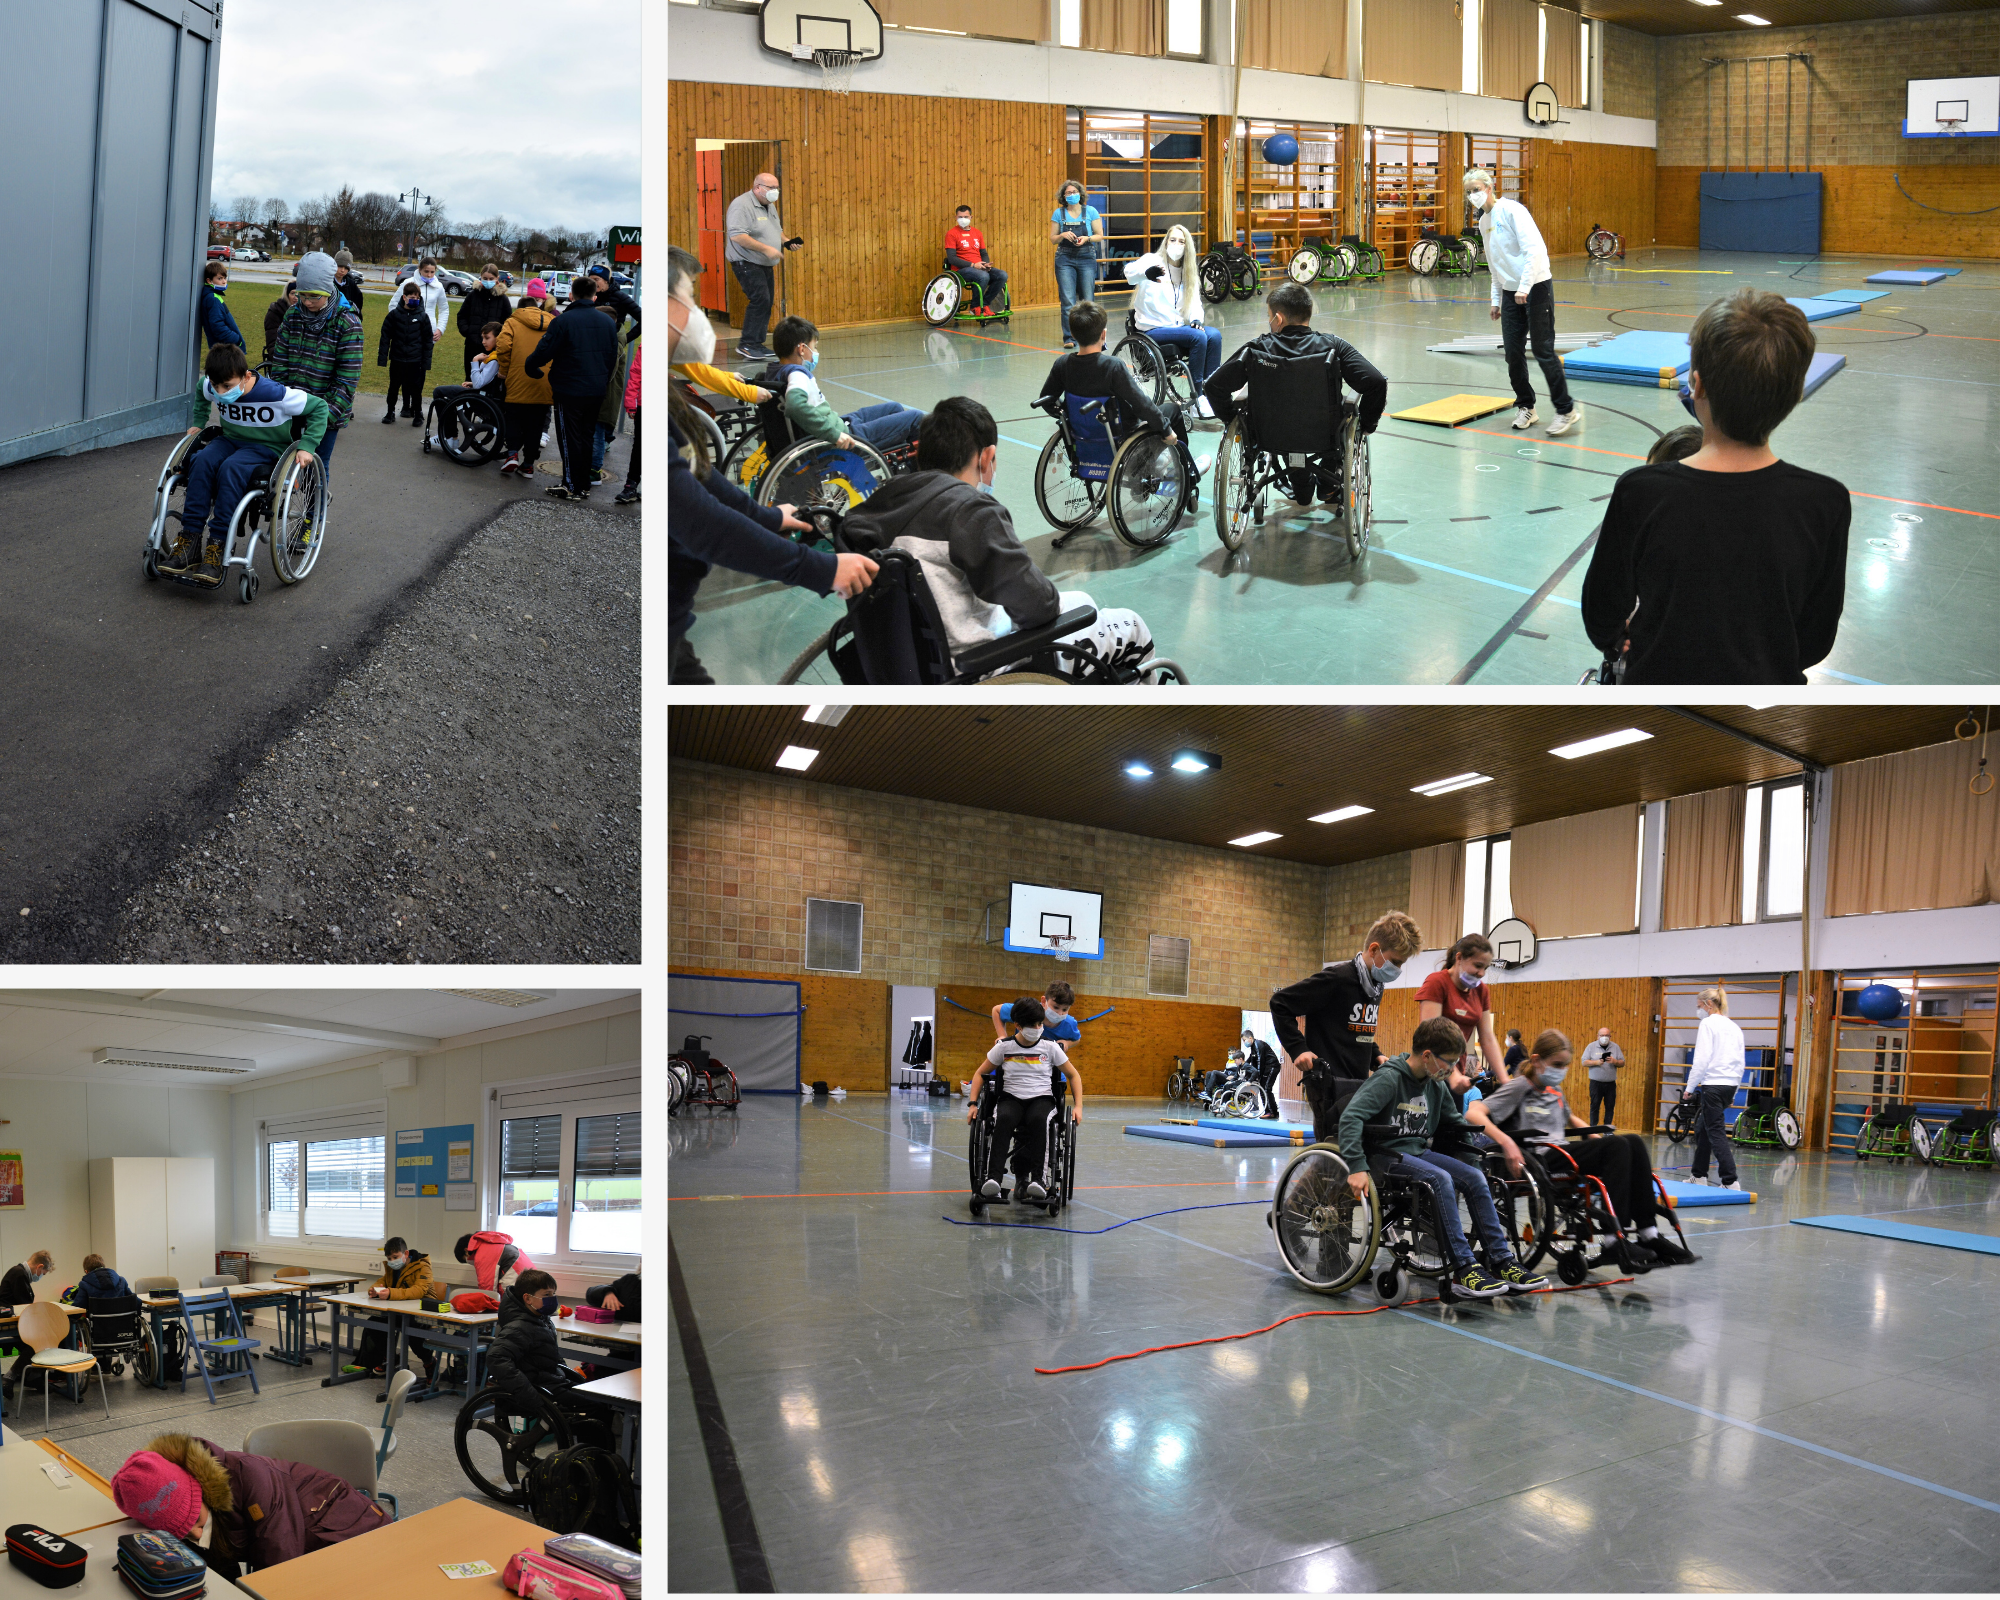 Bilder des ersten inklusiven Rollstuhlsports in der Schule